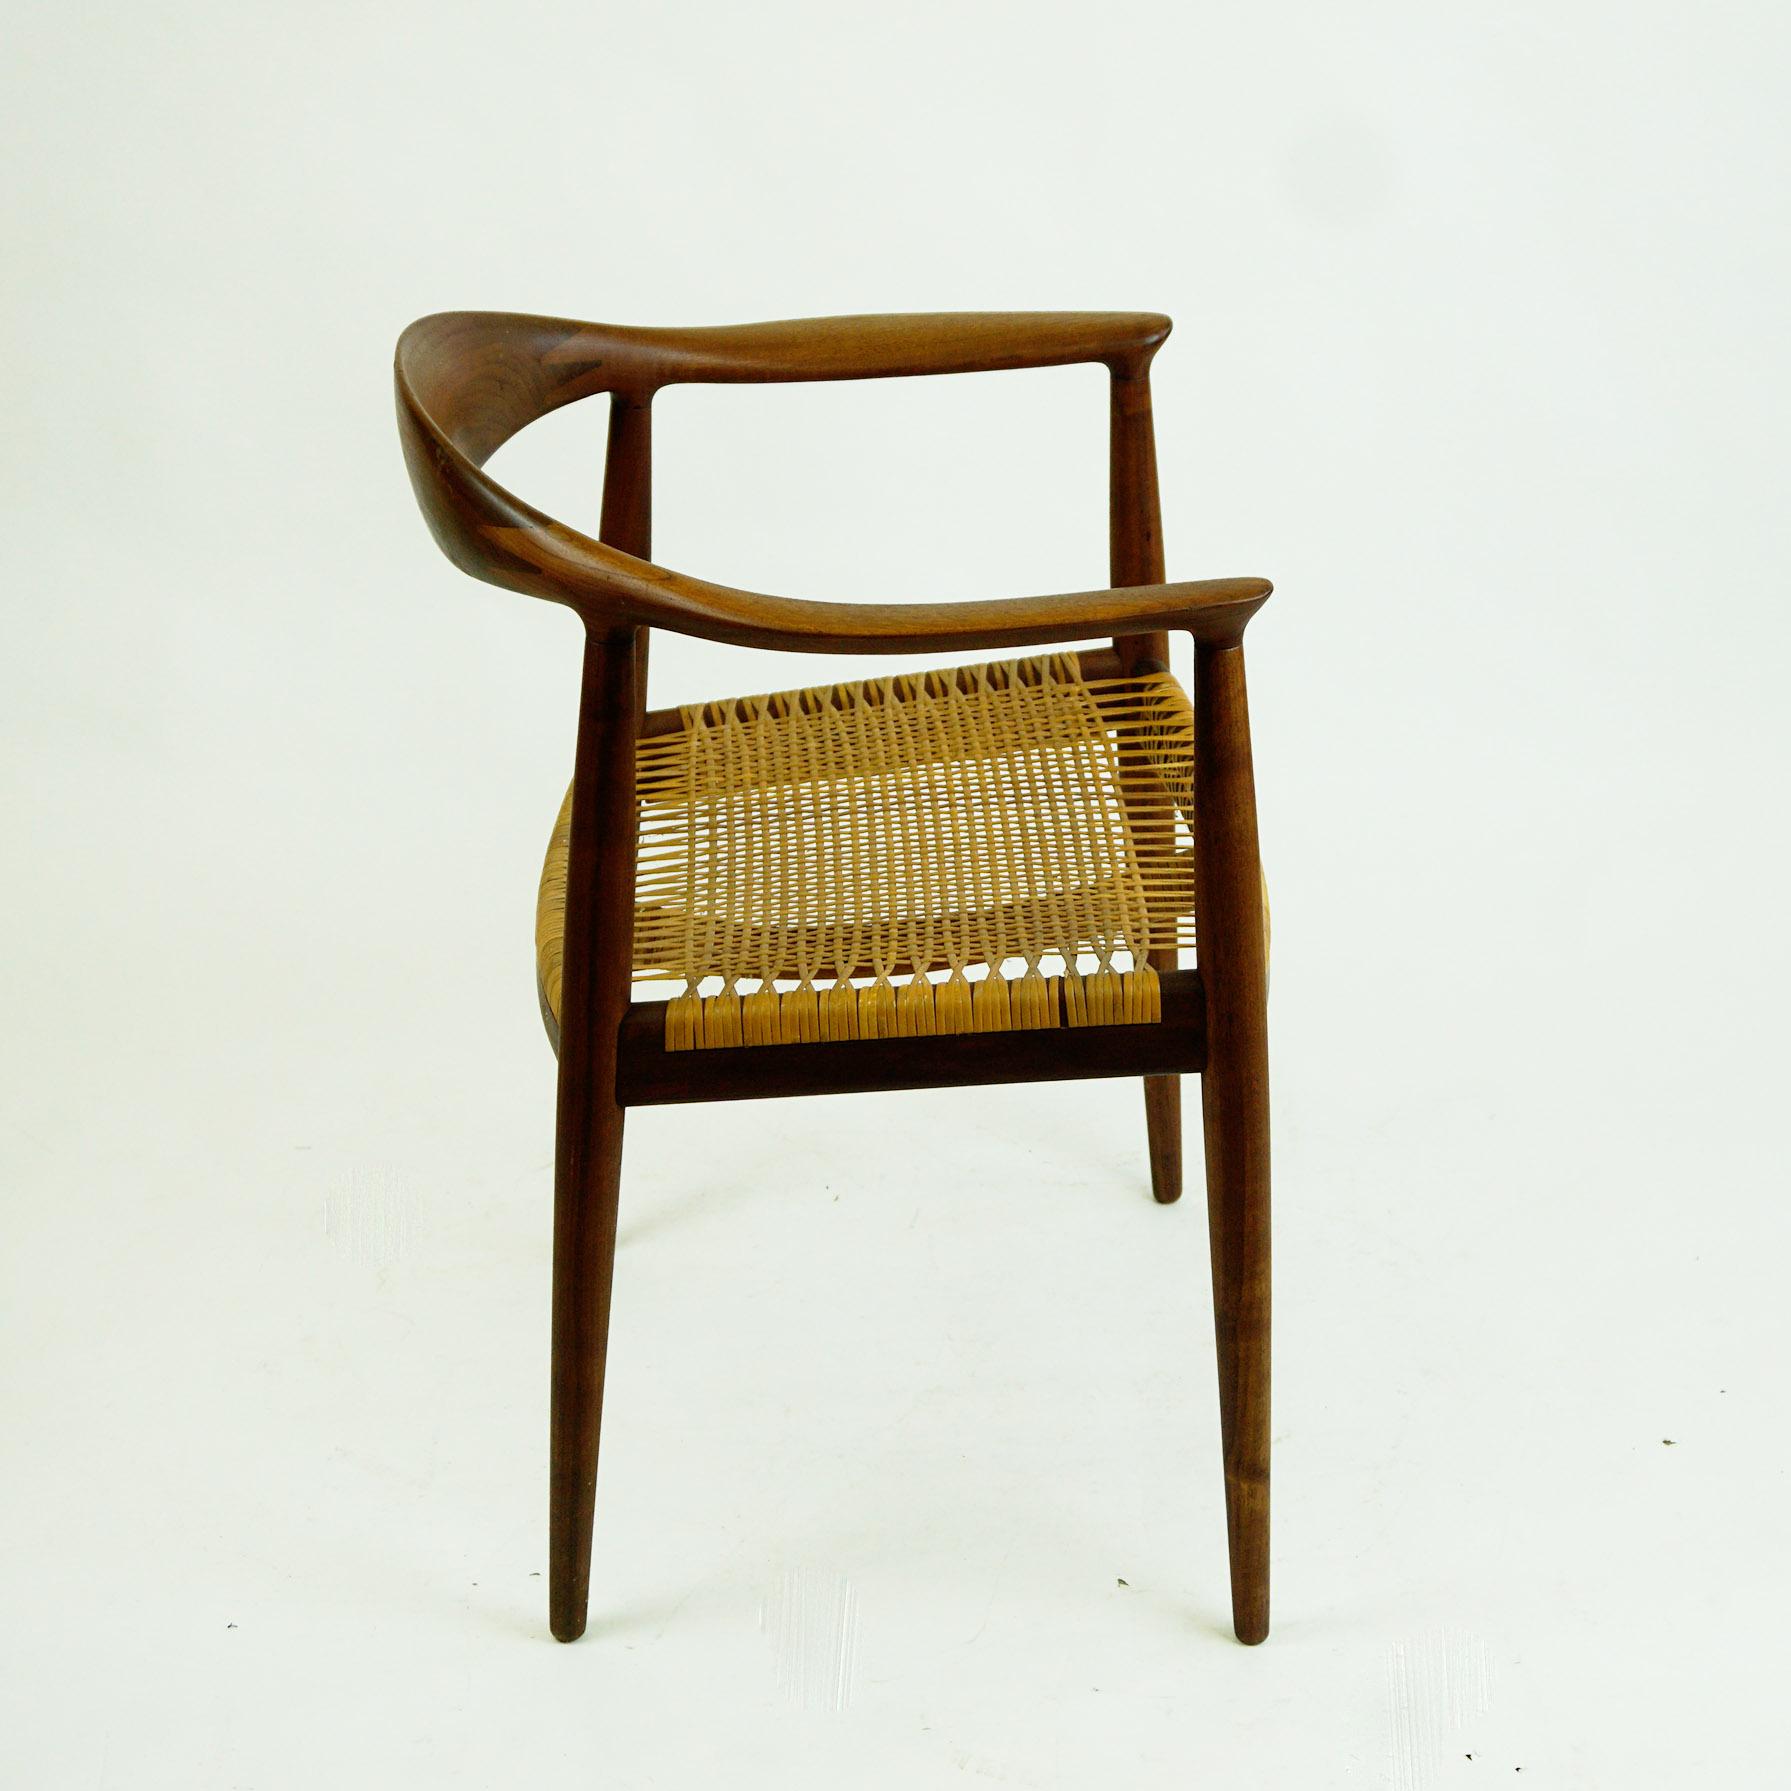 Scandinavian Modern Scandinavian JH 501 Teak and Cane Round Chair by Hans Wegner for Johannes Hansen